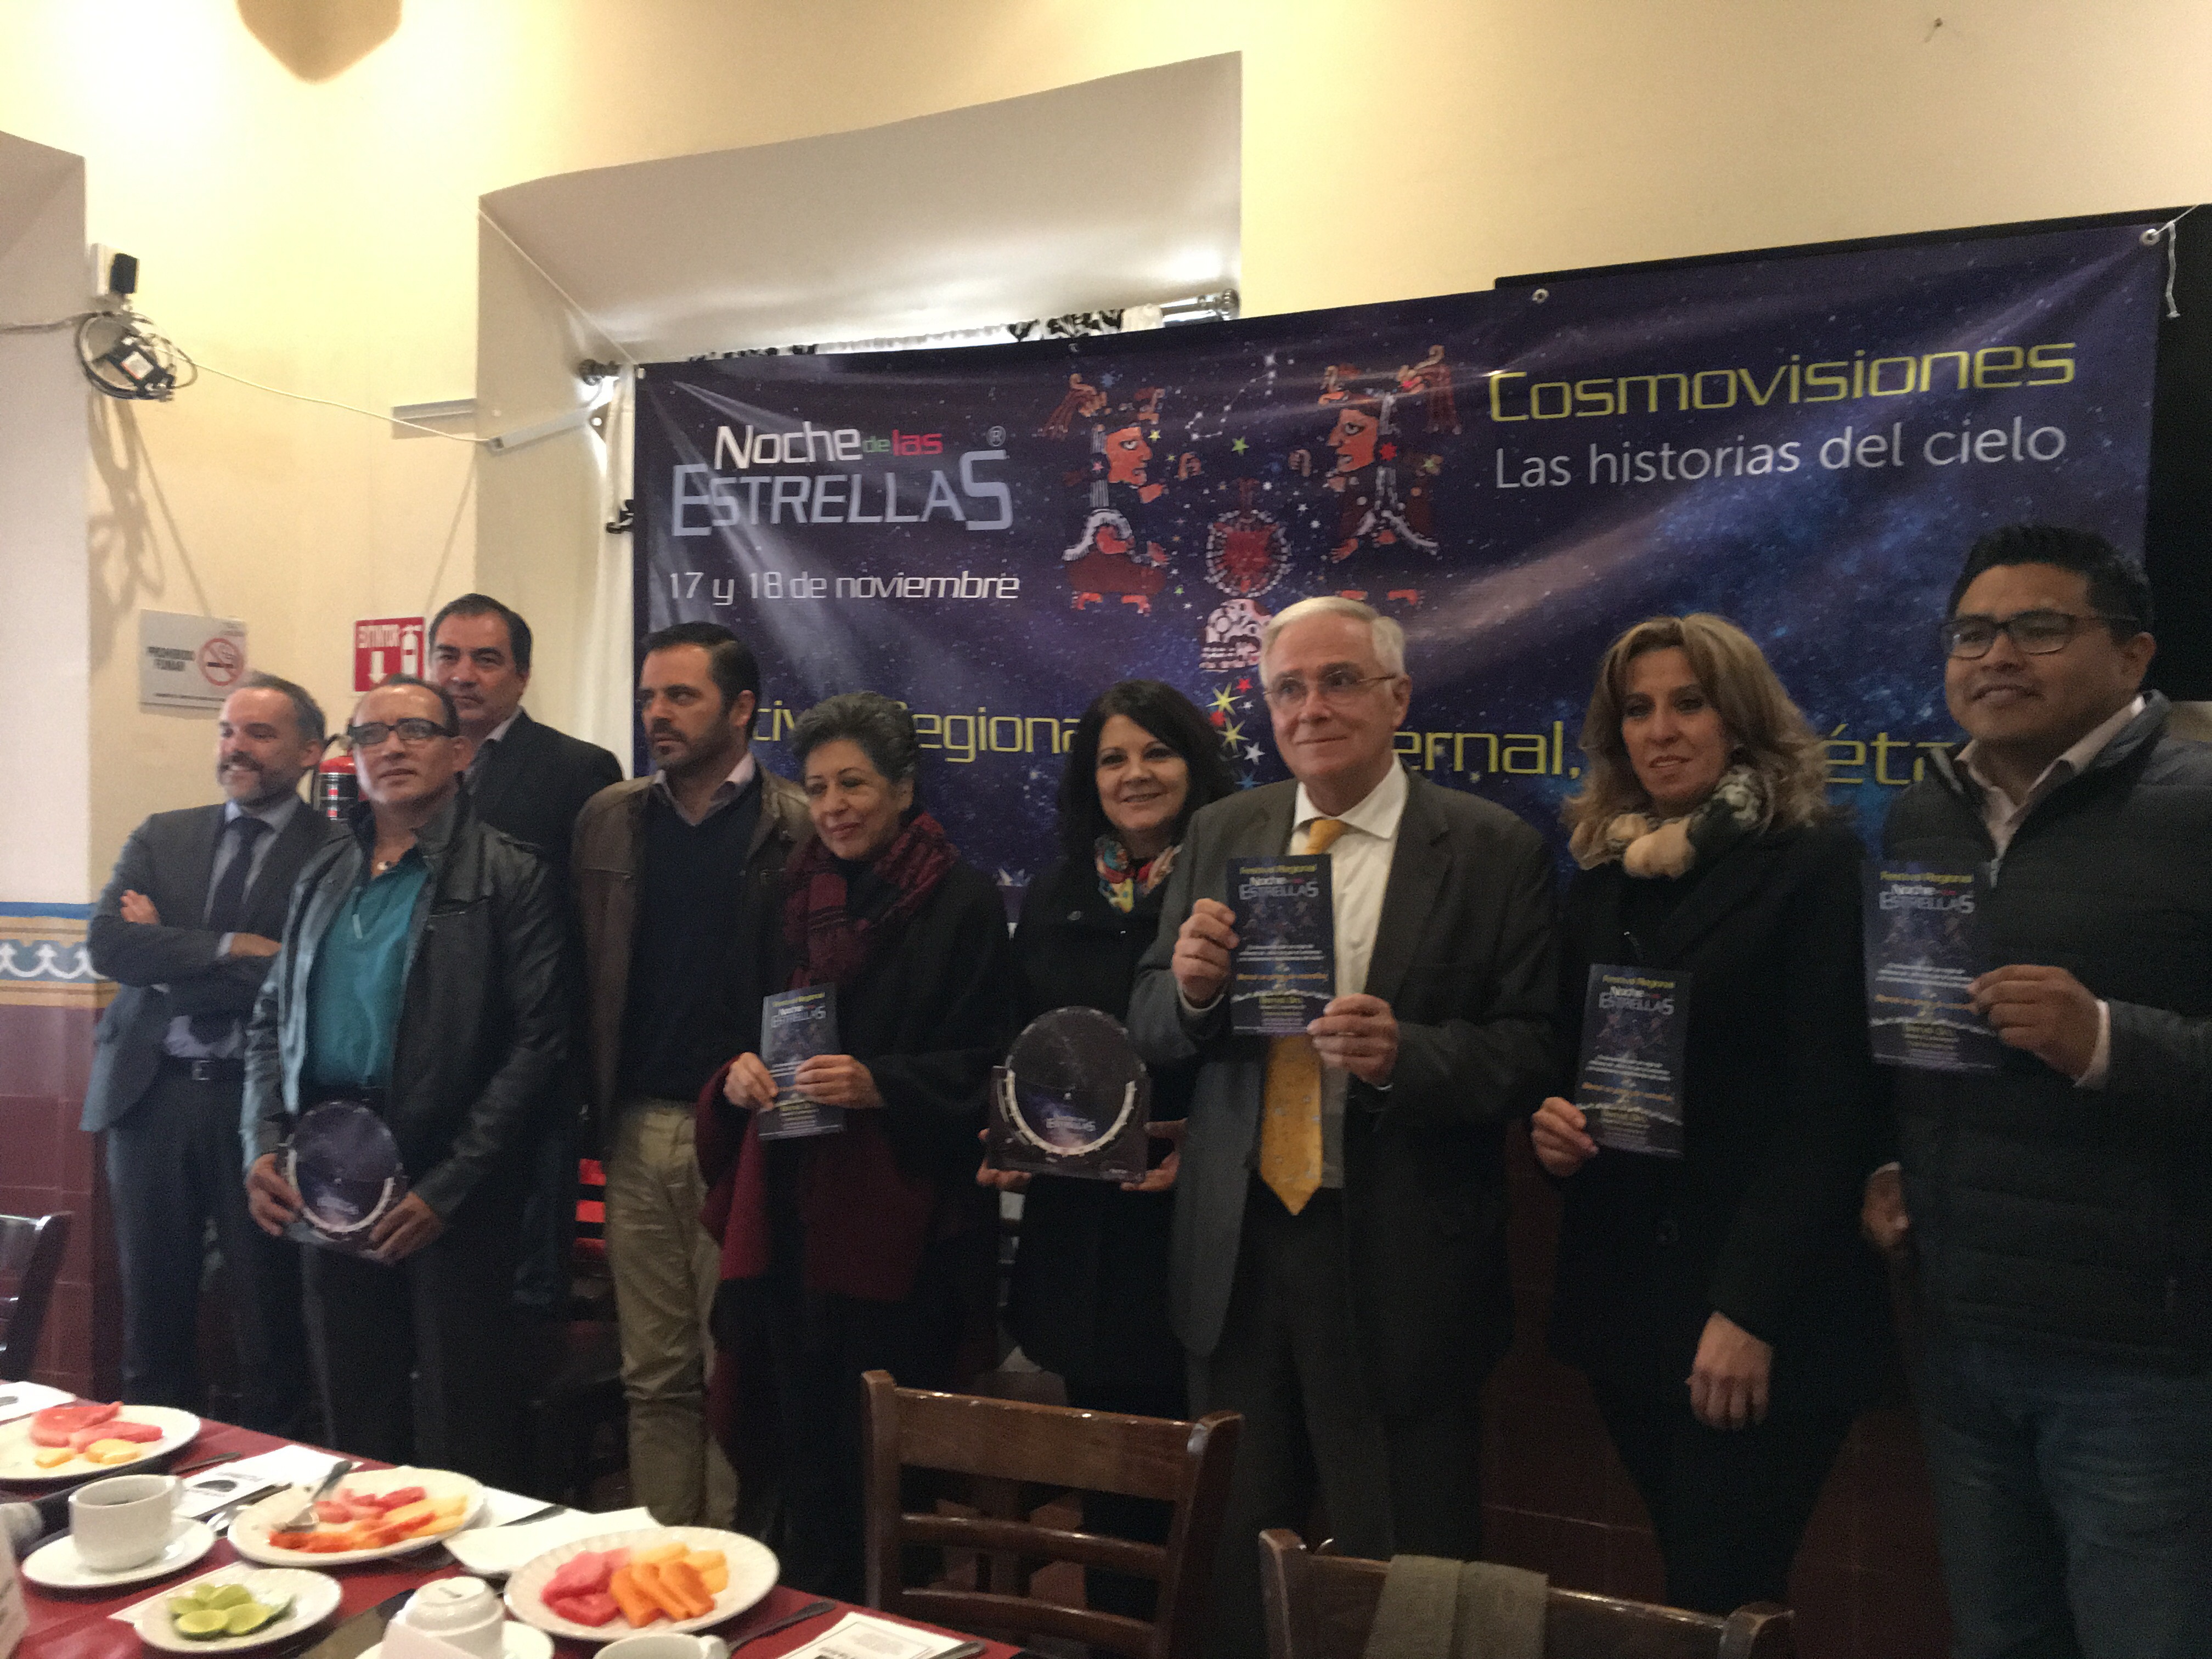  ¡Noche de Estrellas en Bernal! Una fiesta científica y cultural